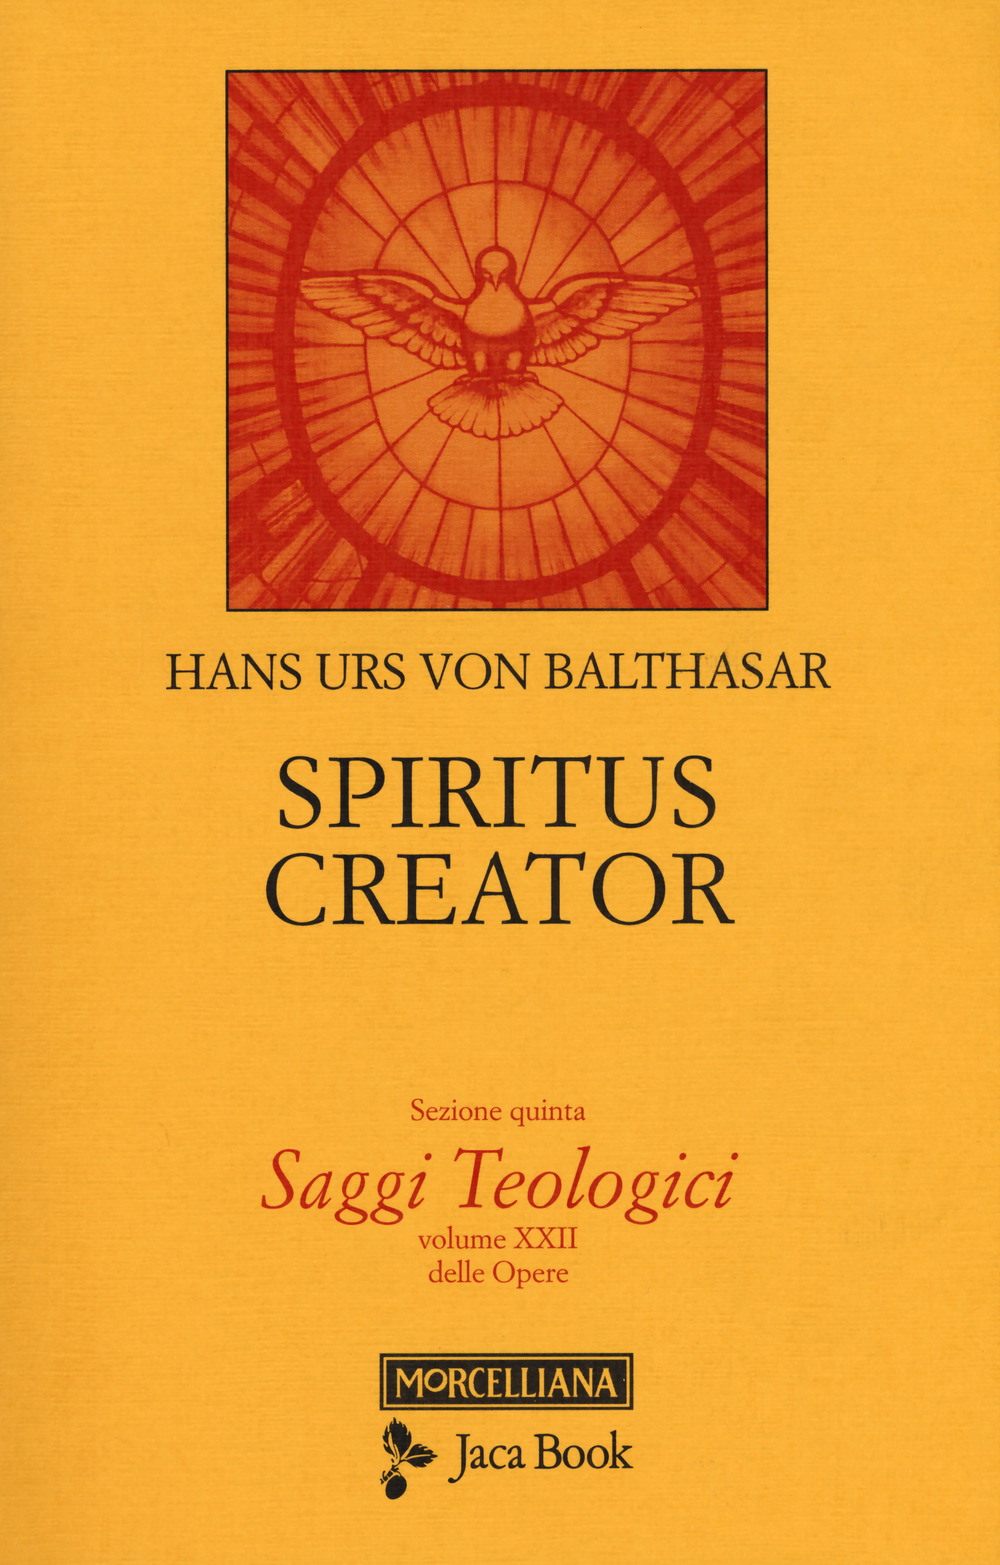 Saggi teologici. Vol. 5: Spiritus creator